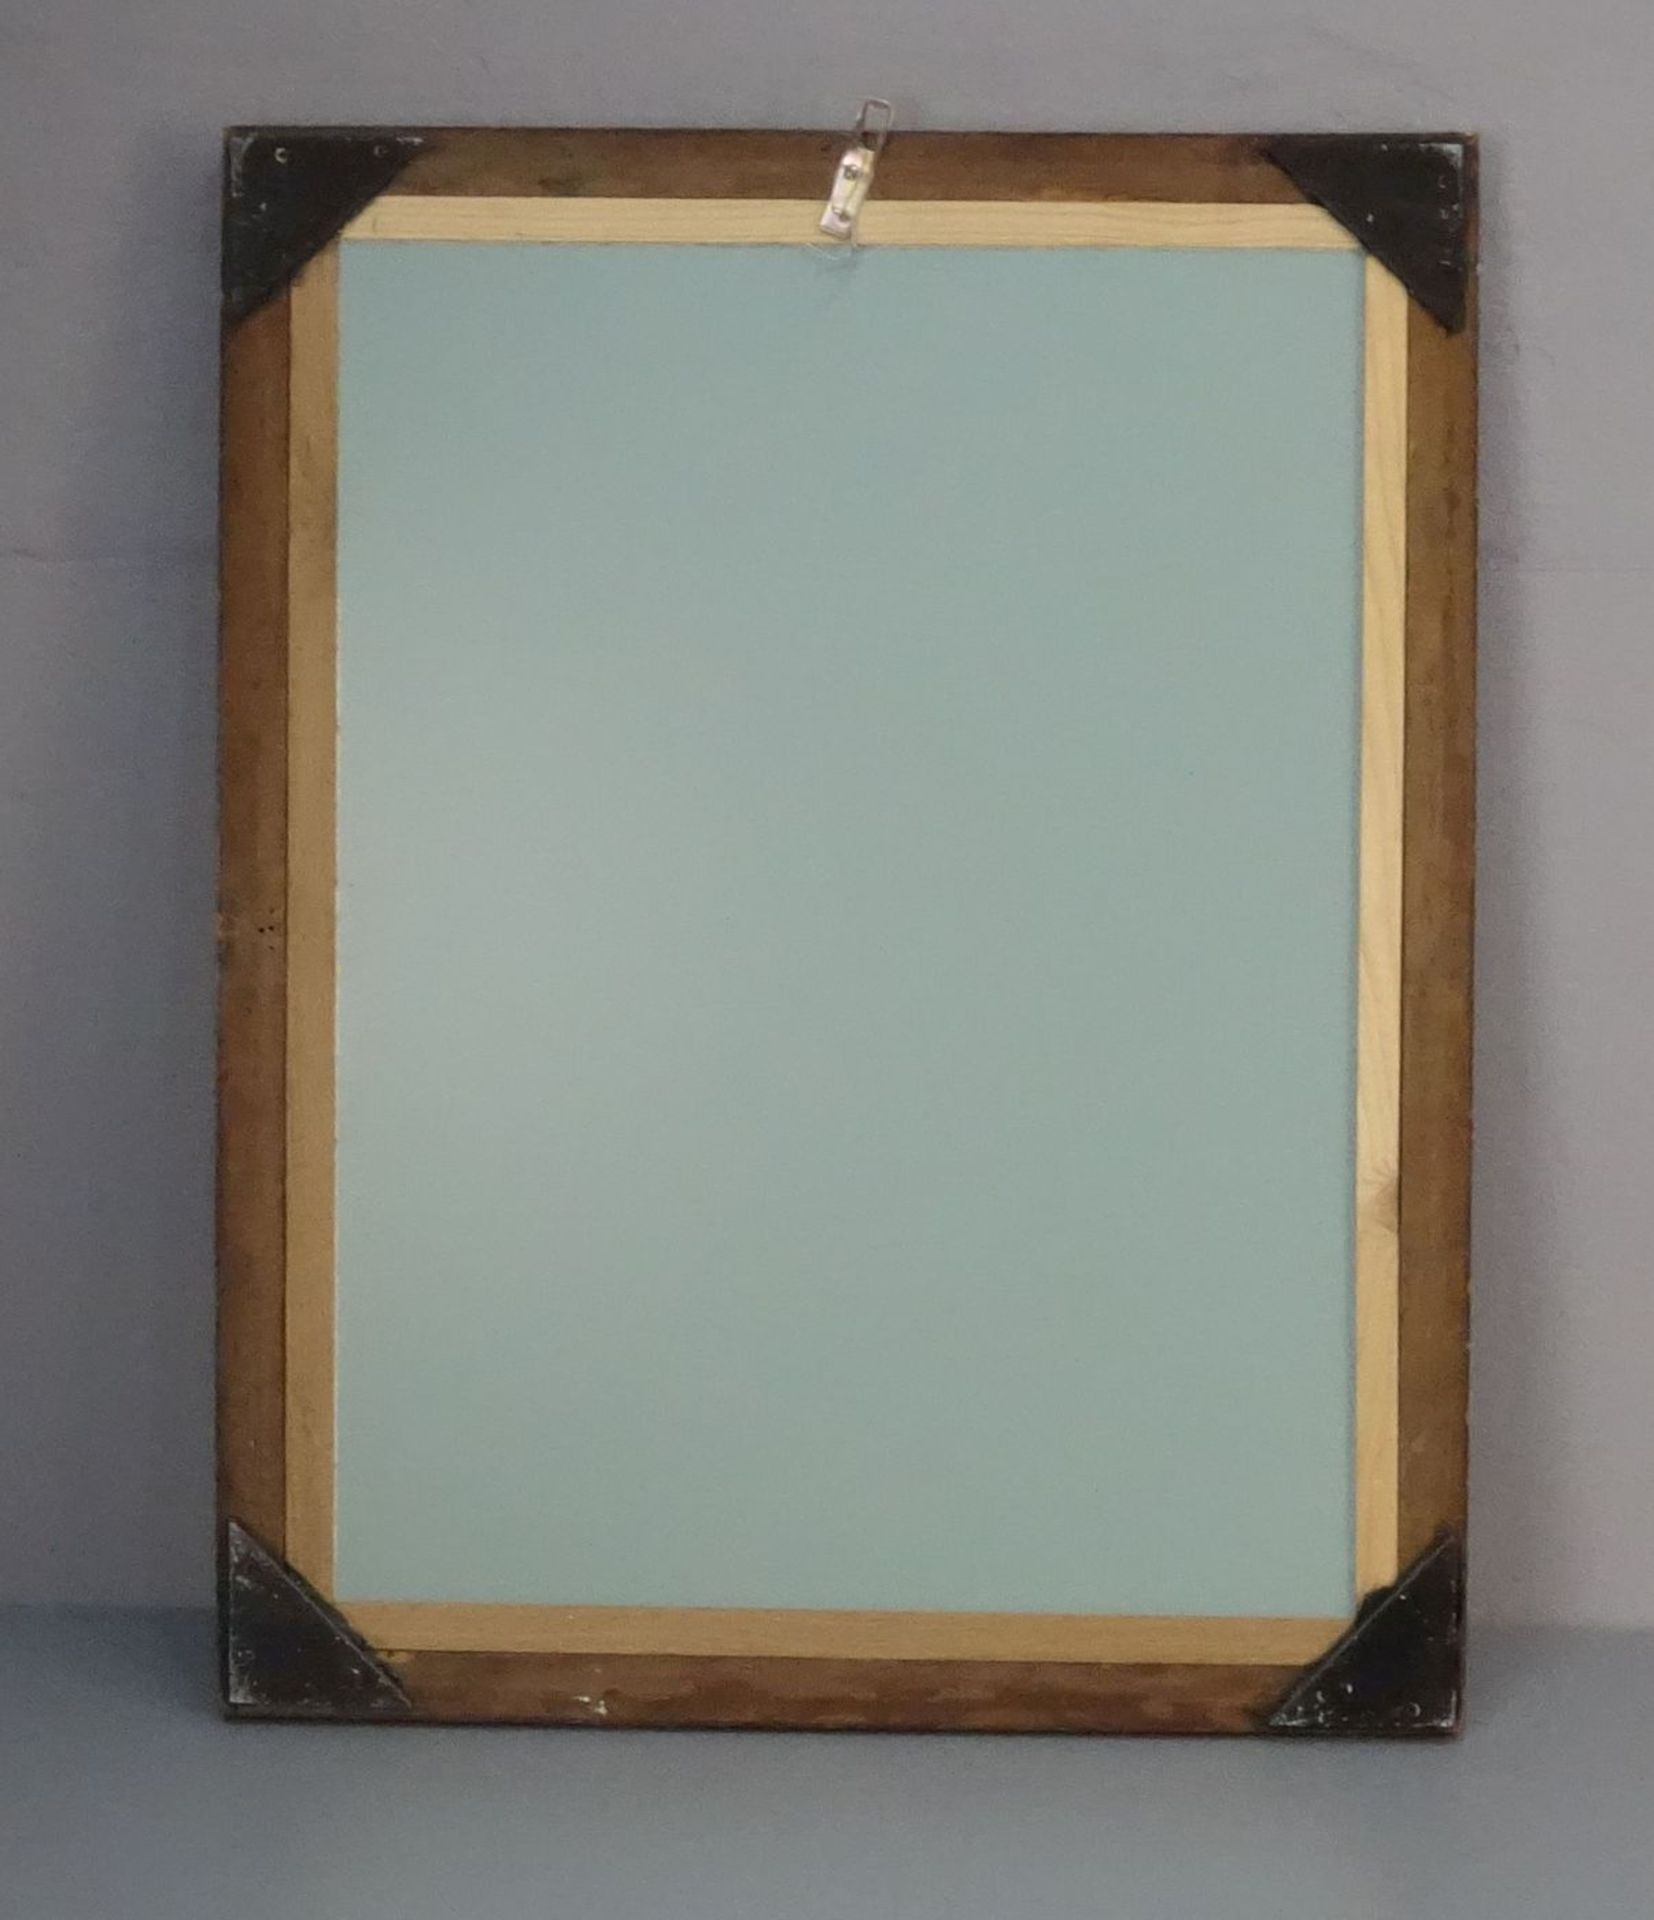 SPIEGEL / mirror, in dunkelbraun lasierter, profilierter und geschnitzter Rahmenleiste und mit - Bild 2 aus 2